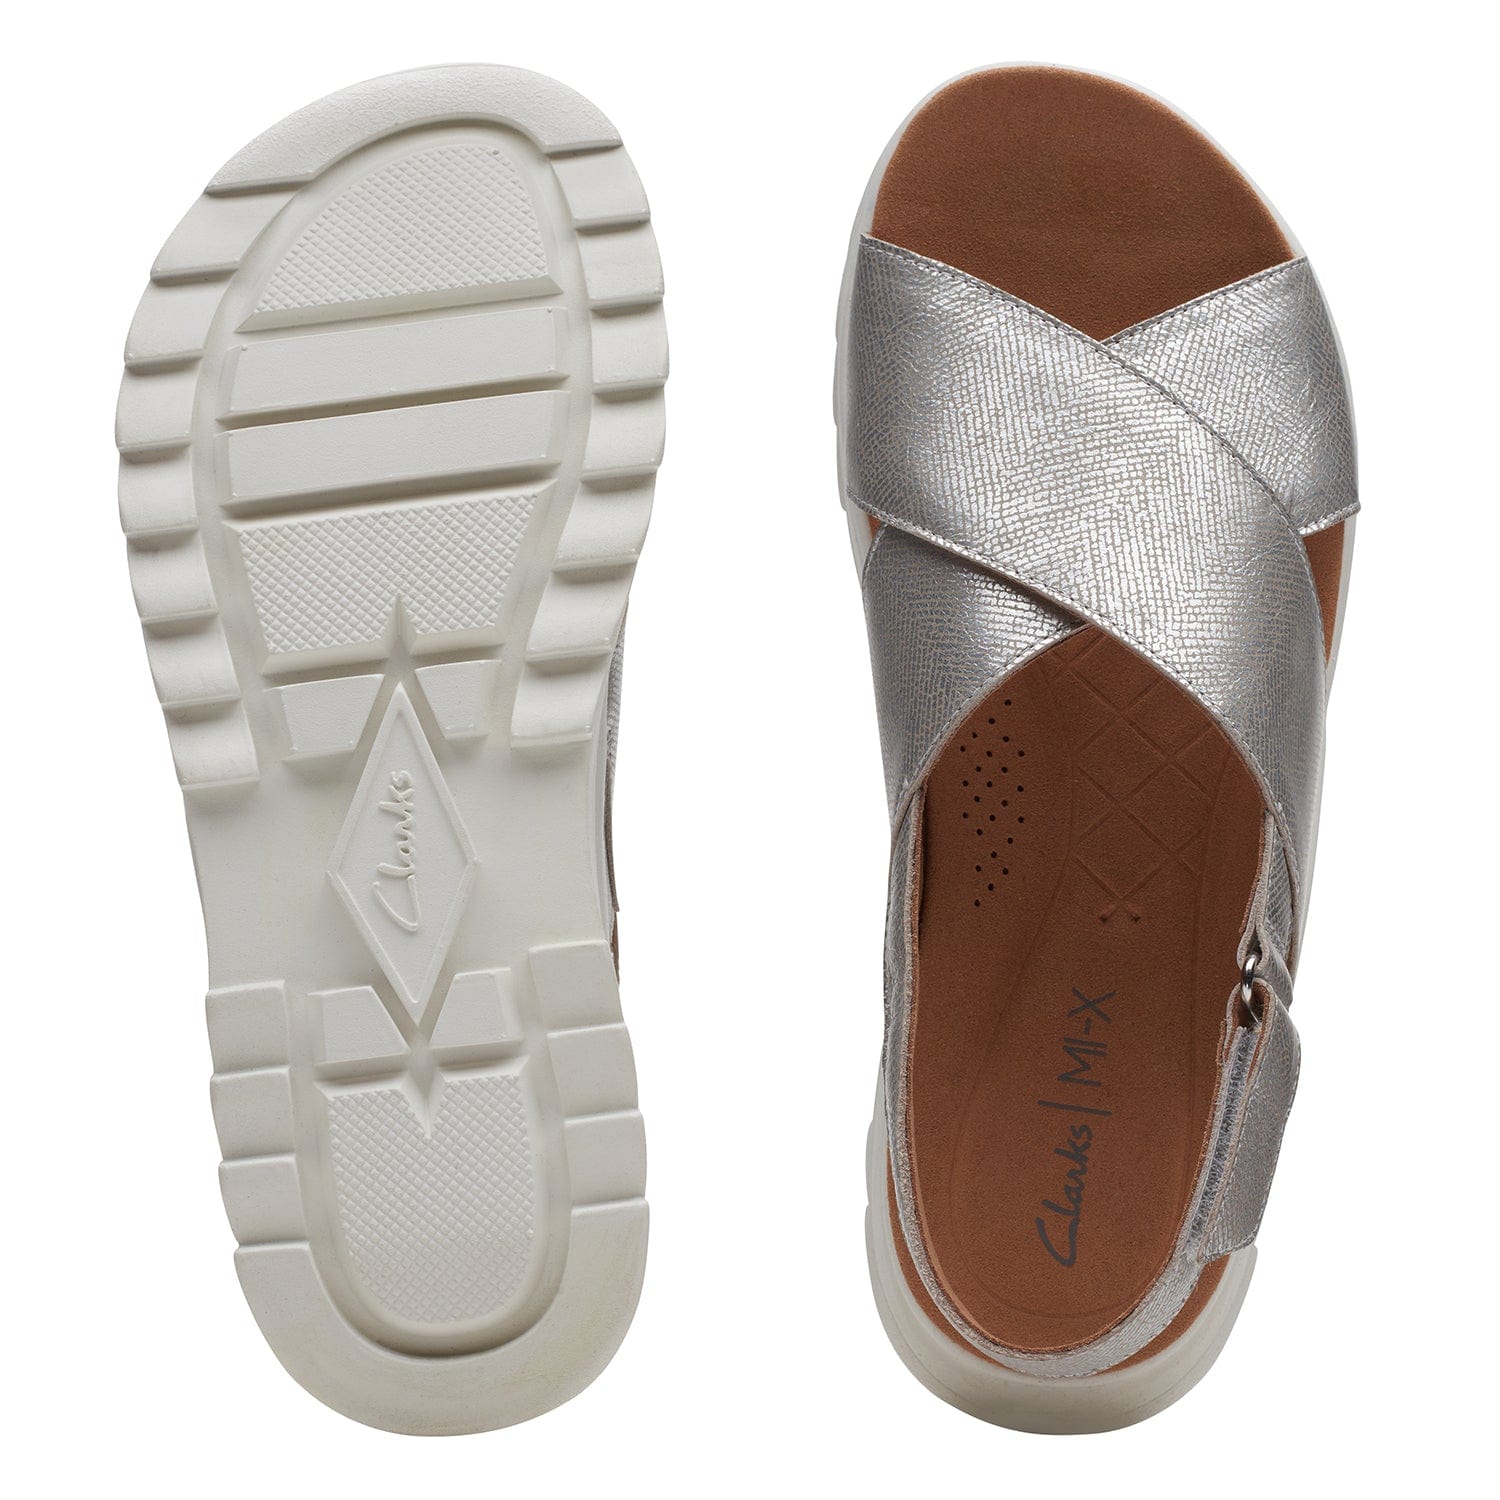 Clarks Dashlite Wish - Sandals - Silver Metallic - 261719514 - D Width (Standard Fit)